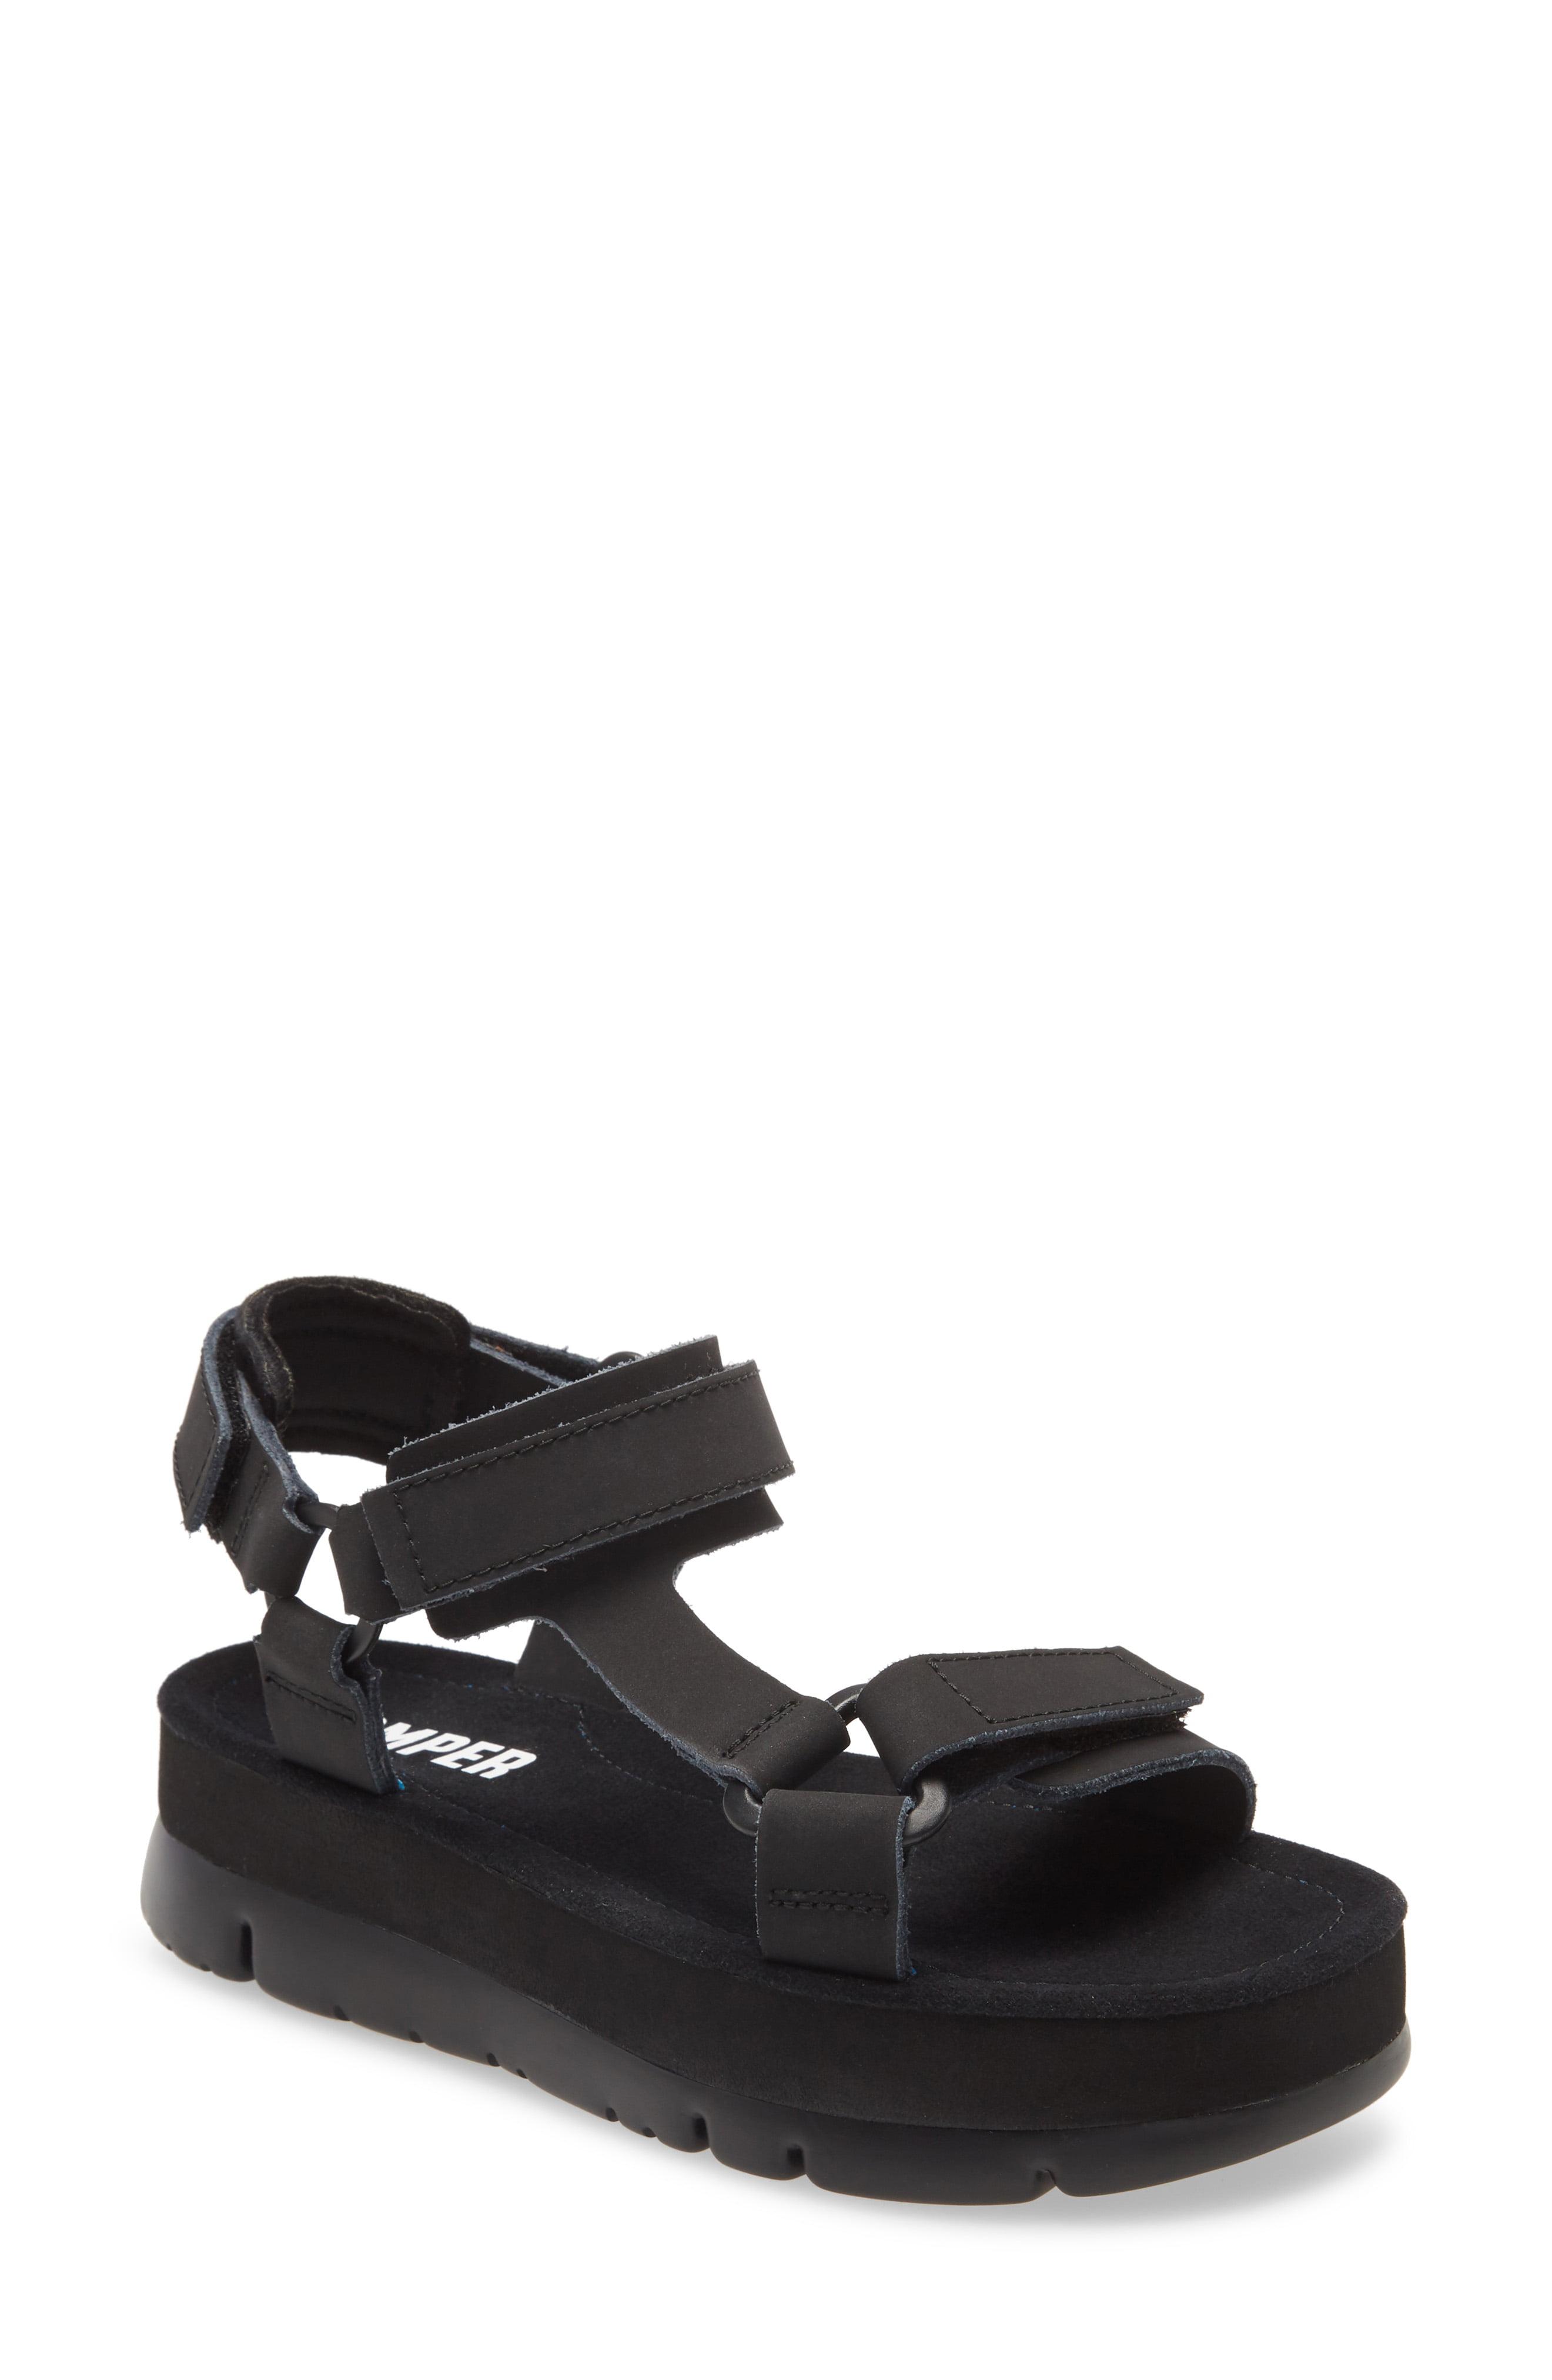 Camper Oruga Up Platform Sport Sandal in Black Leather (Black) - Lyst